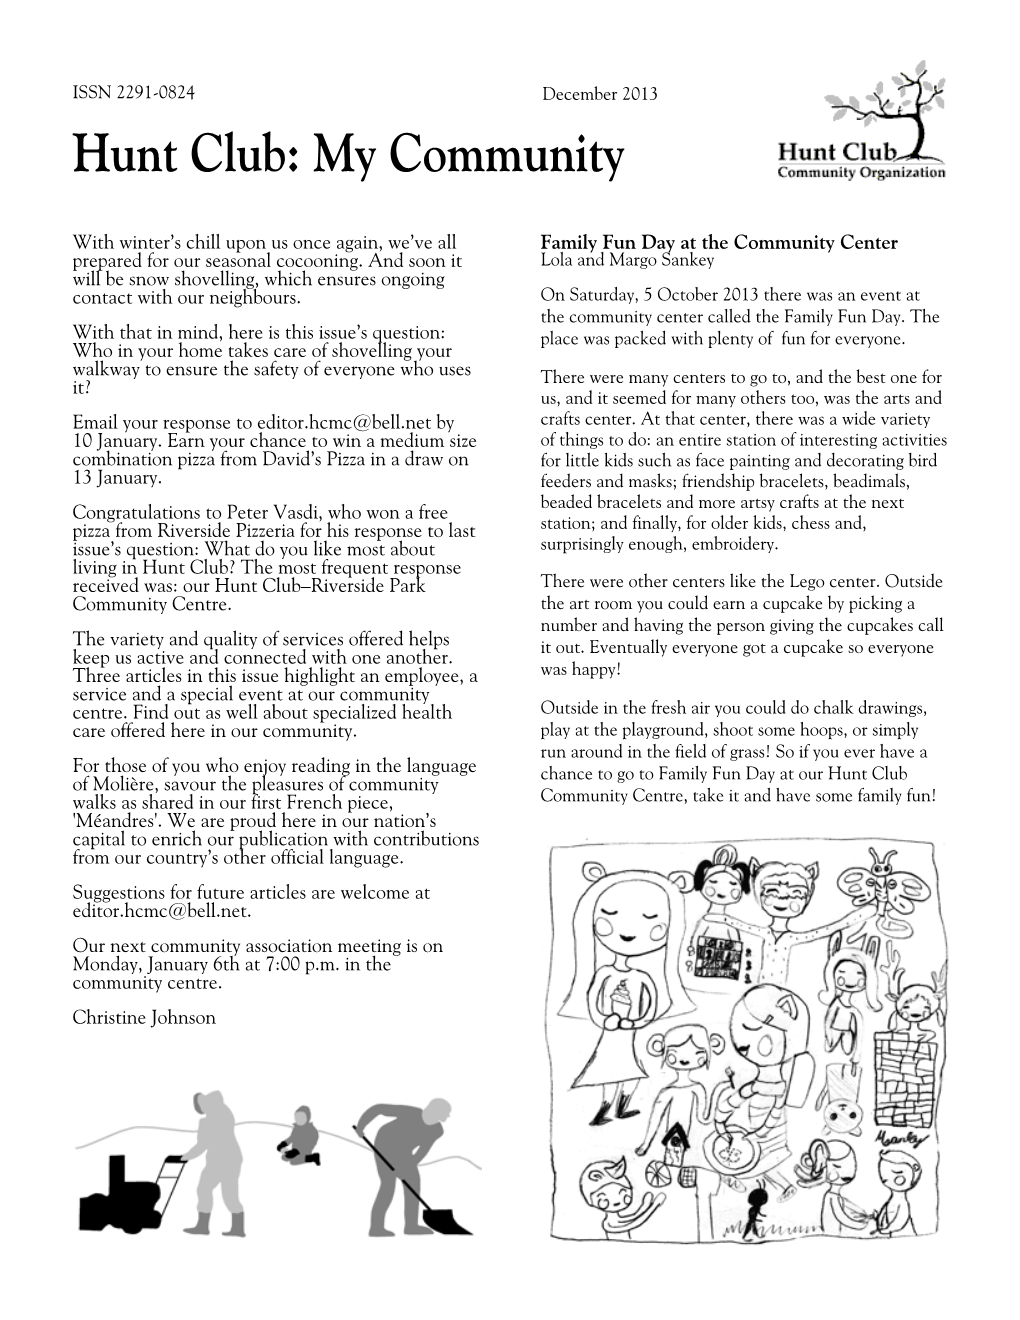 Hunt Club: My Community